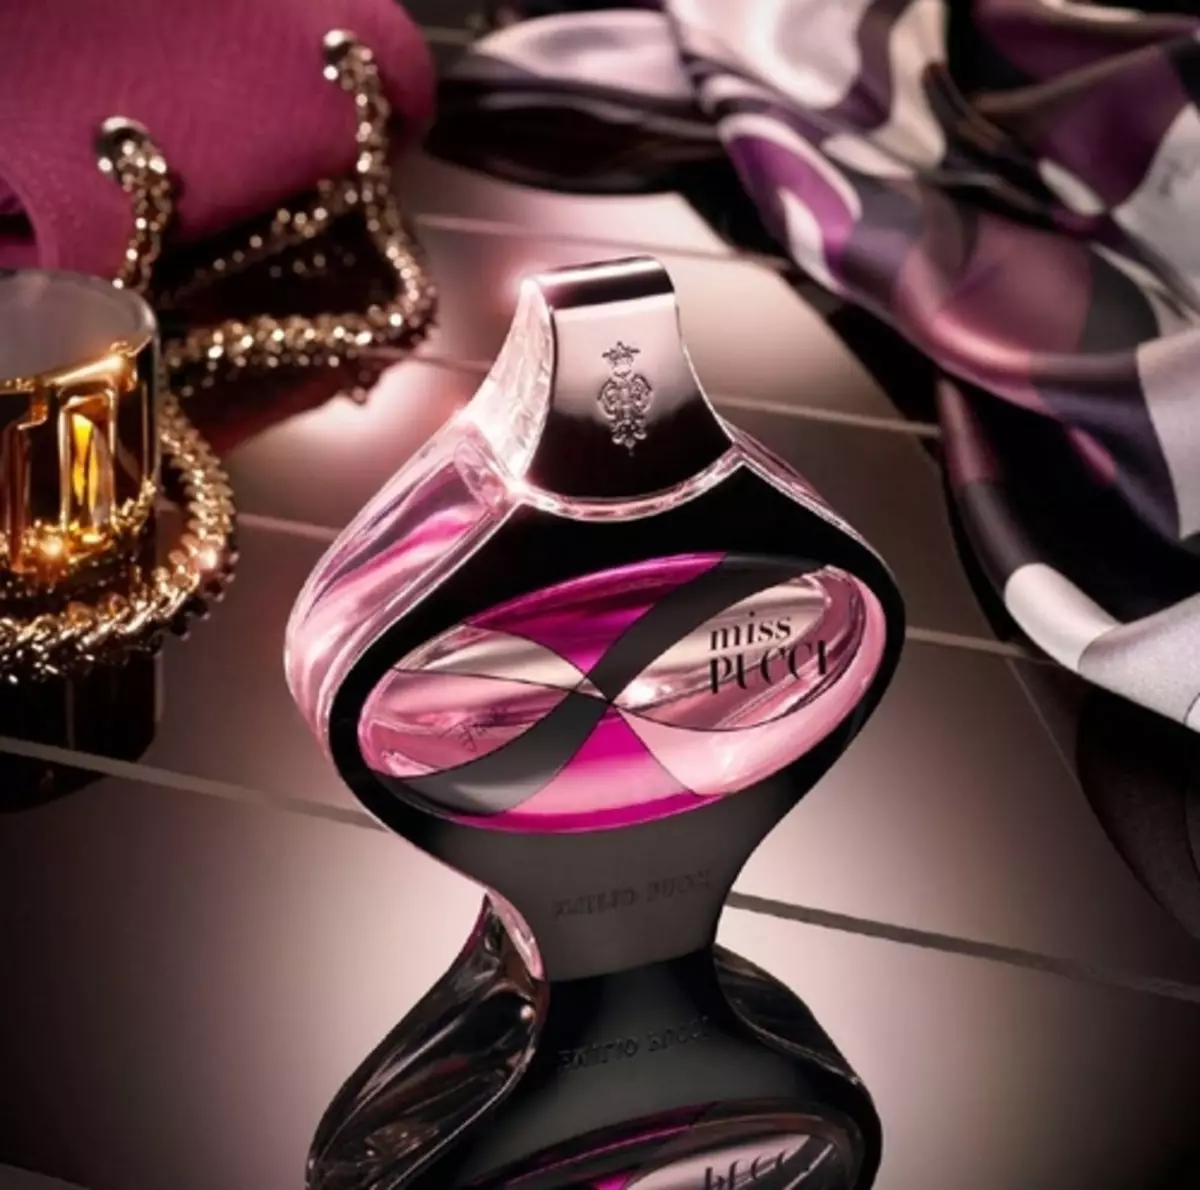 Emilio Pucci Perfum: Vivara Perfum, Perfum Miss Pucci i altres vendes d'aigua de la marca 25318_3